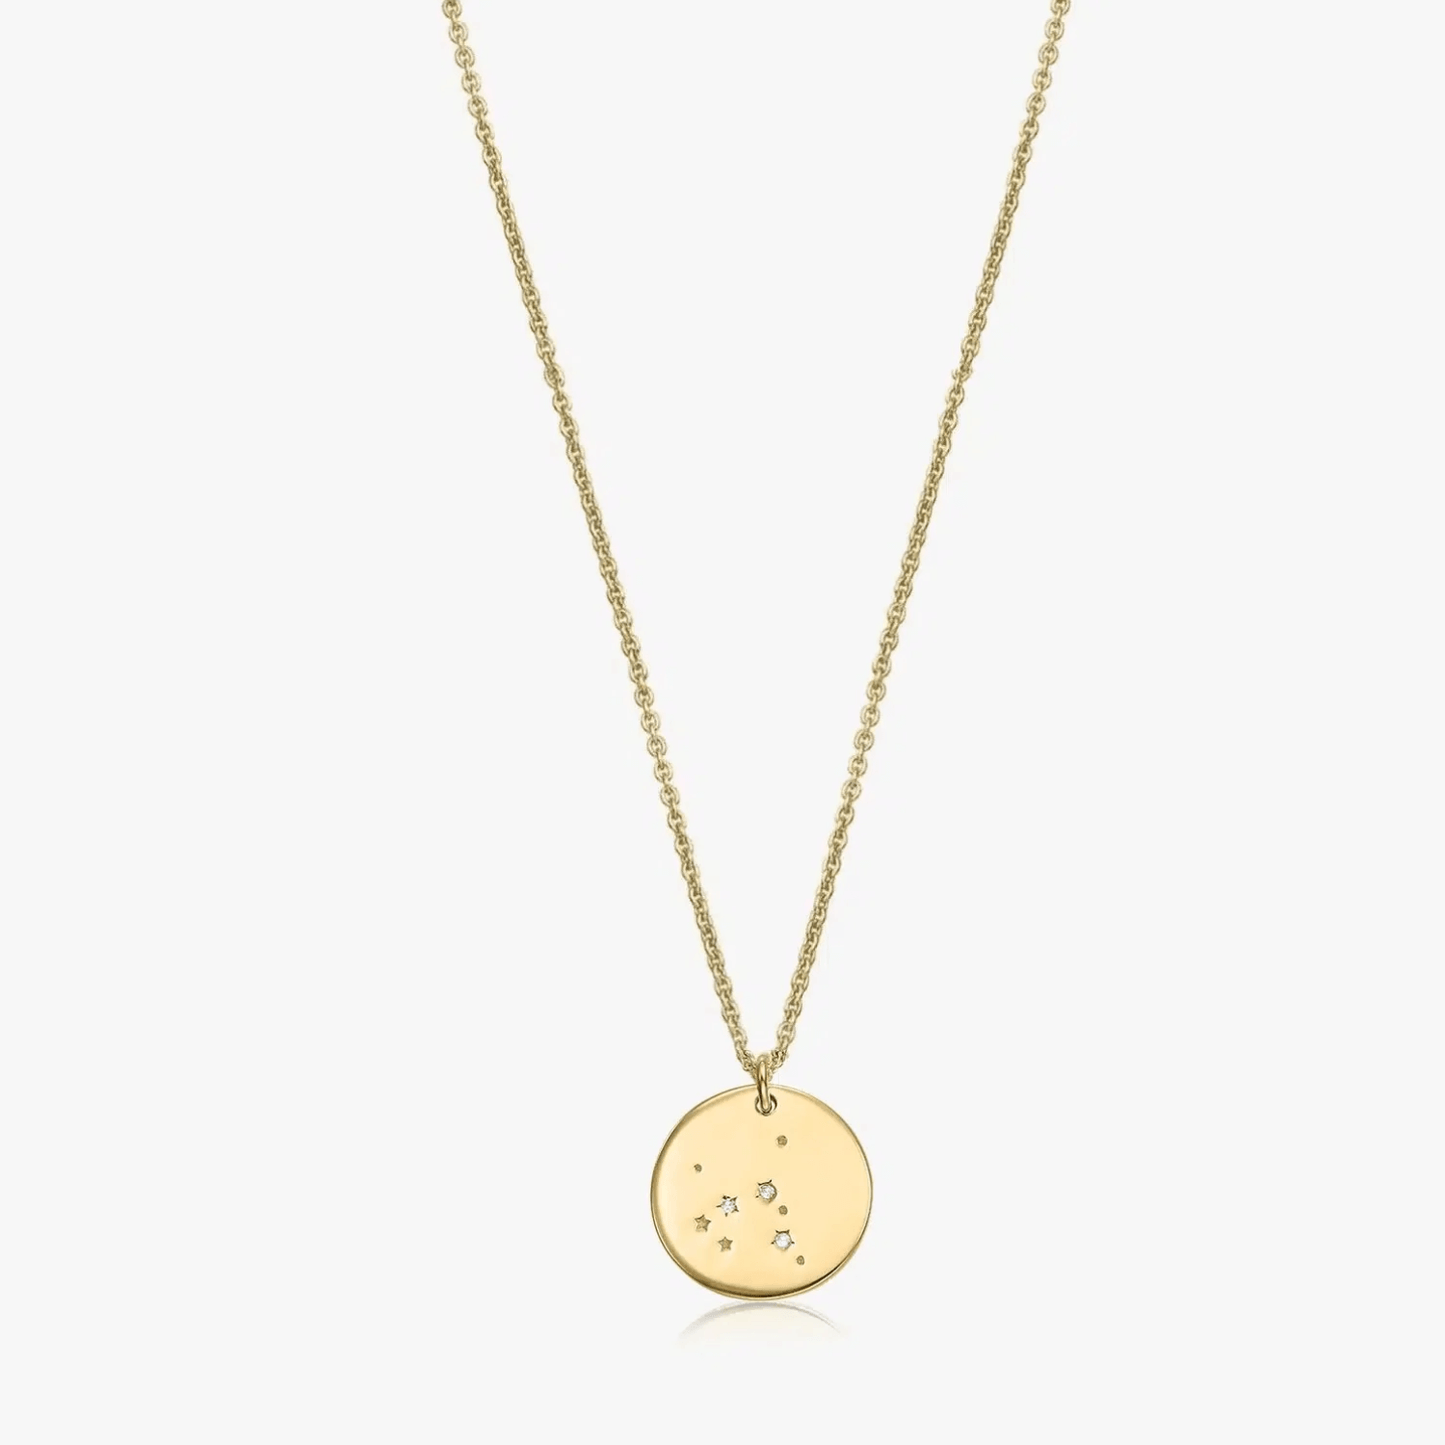 Silver necklace Golden Zodiac - Sagittarius